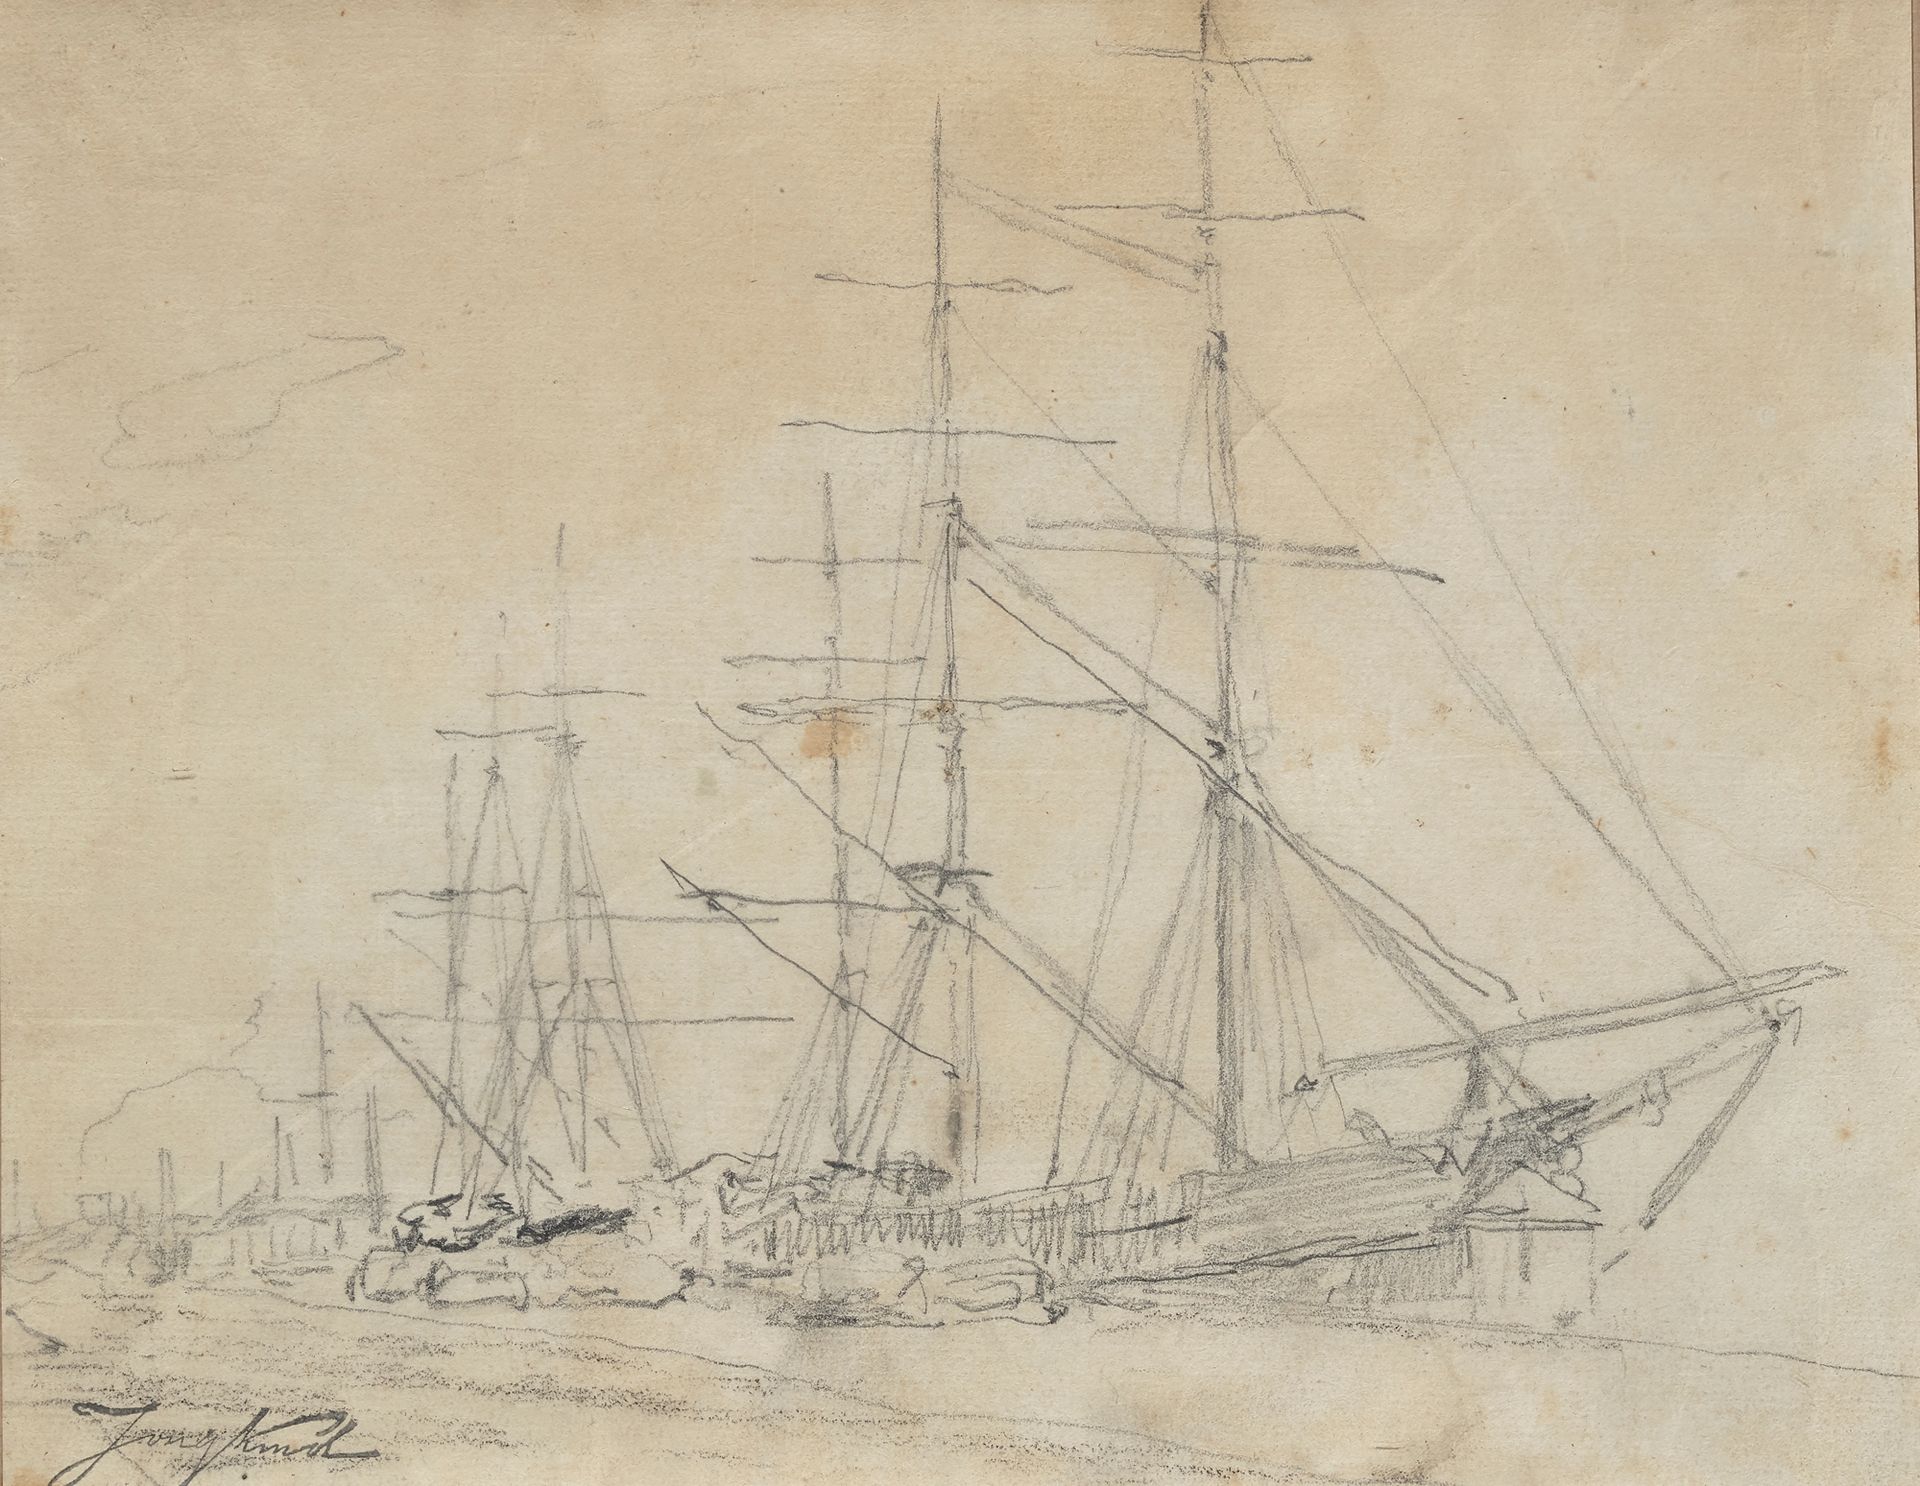 Johan-Barthold JONGKIND (1819-1891) 
Barca a vela
Matita
20 x 26 cm (a vista)